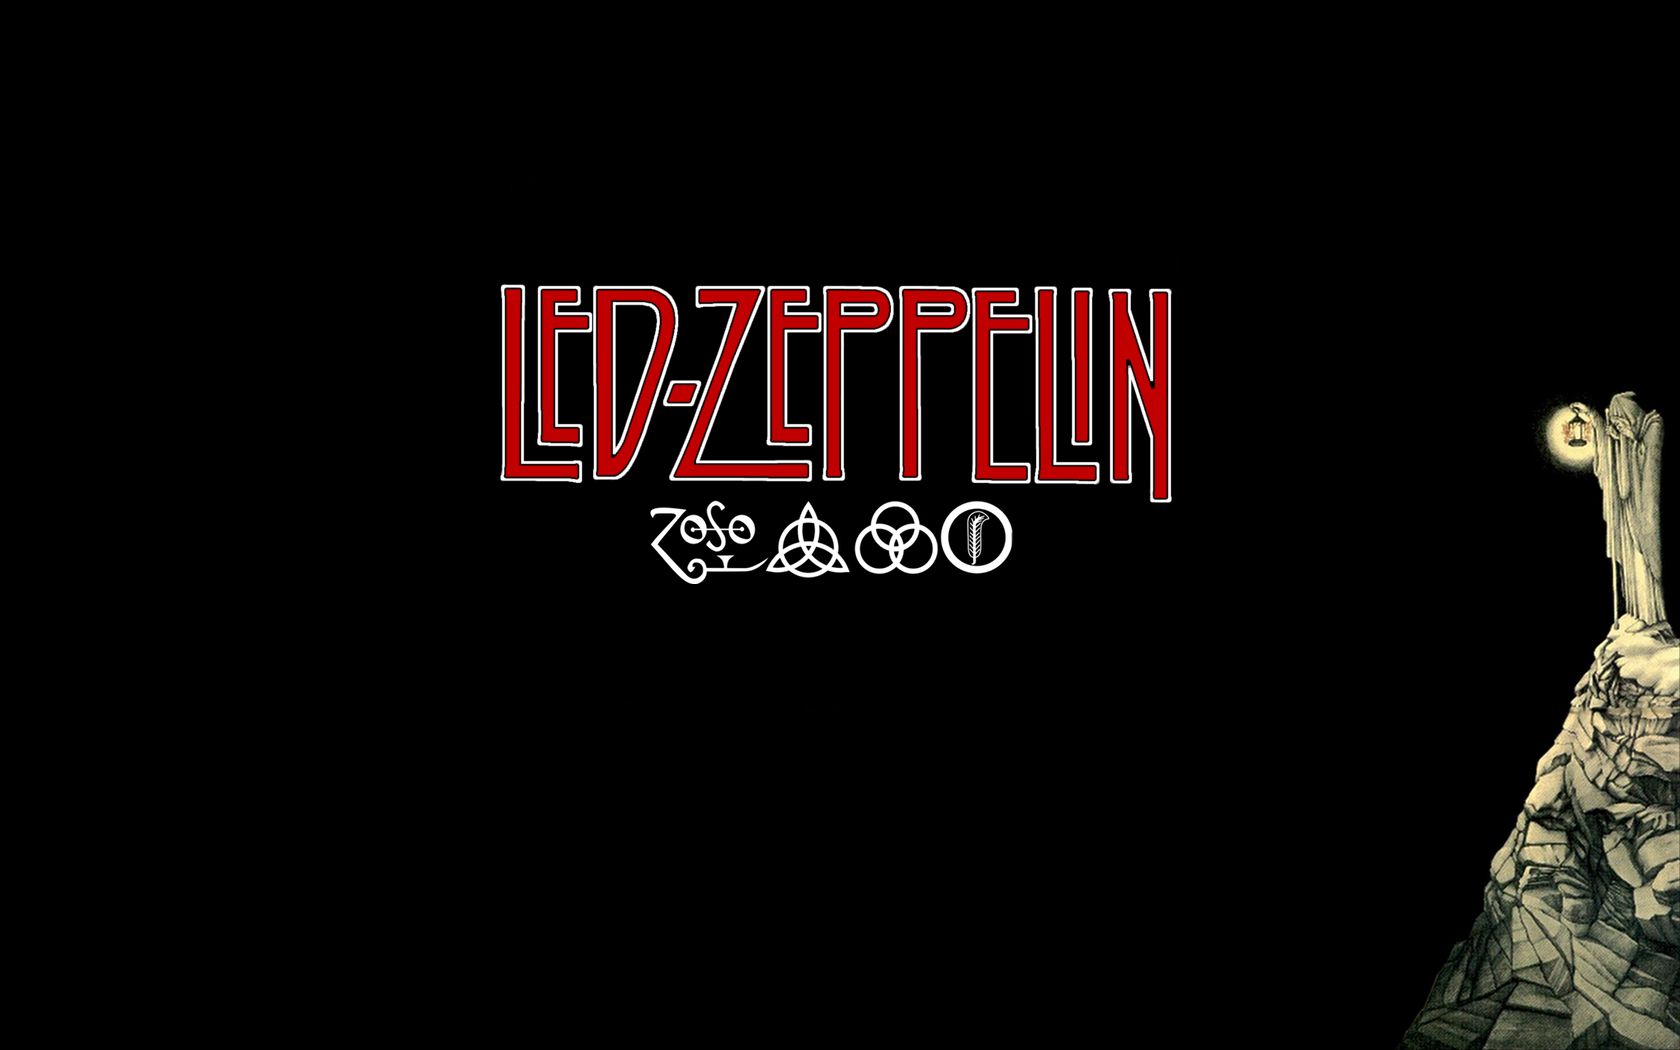 Led Zeppelin Computer Wallpapers, Desktop Backgrounds | 1280x853 ...